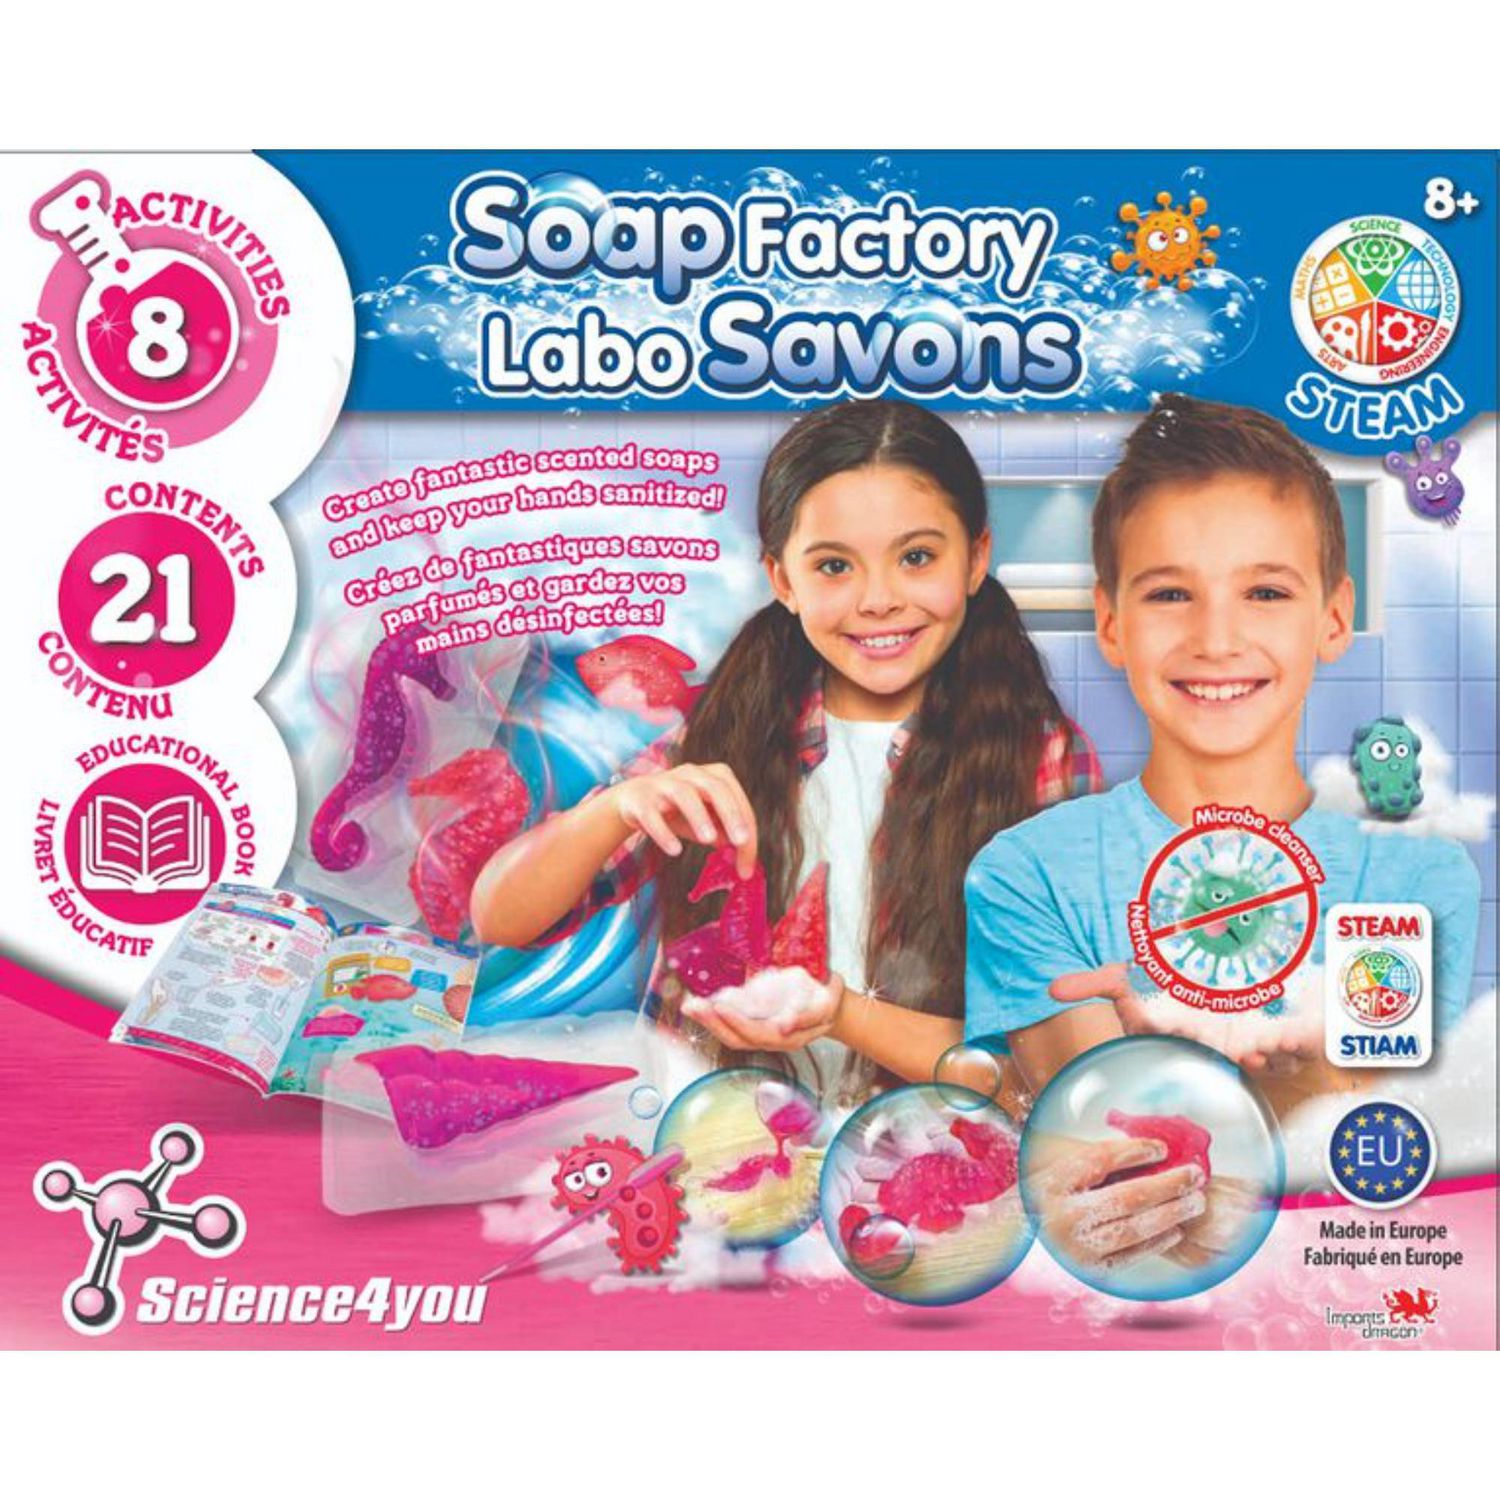 KIDS & LAB - Fabrique ton savon (3 à 5 ans)